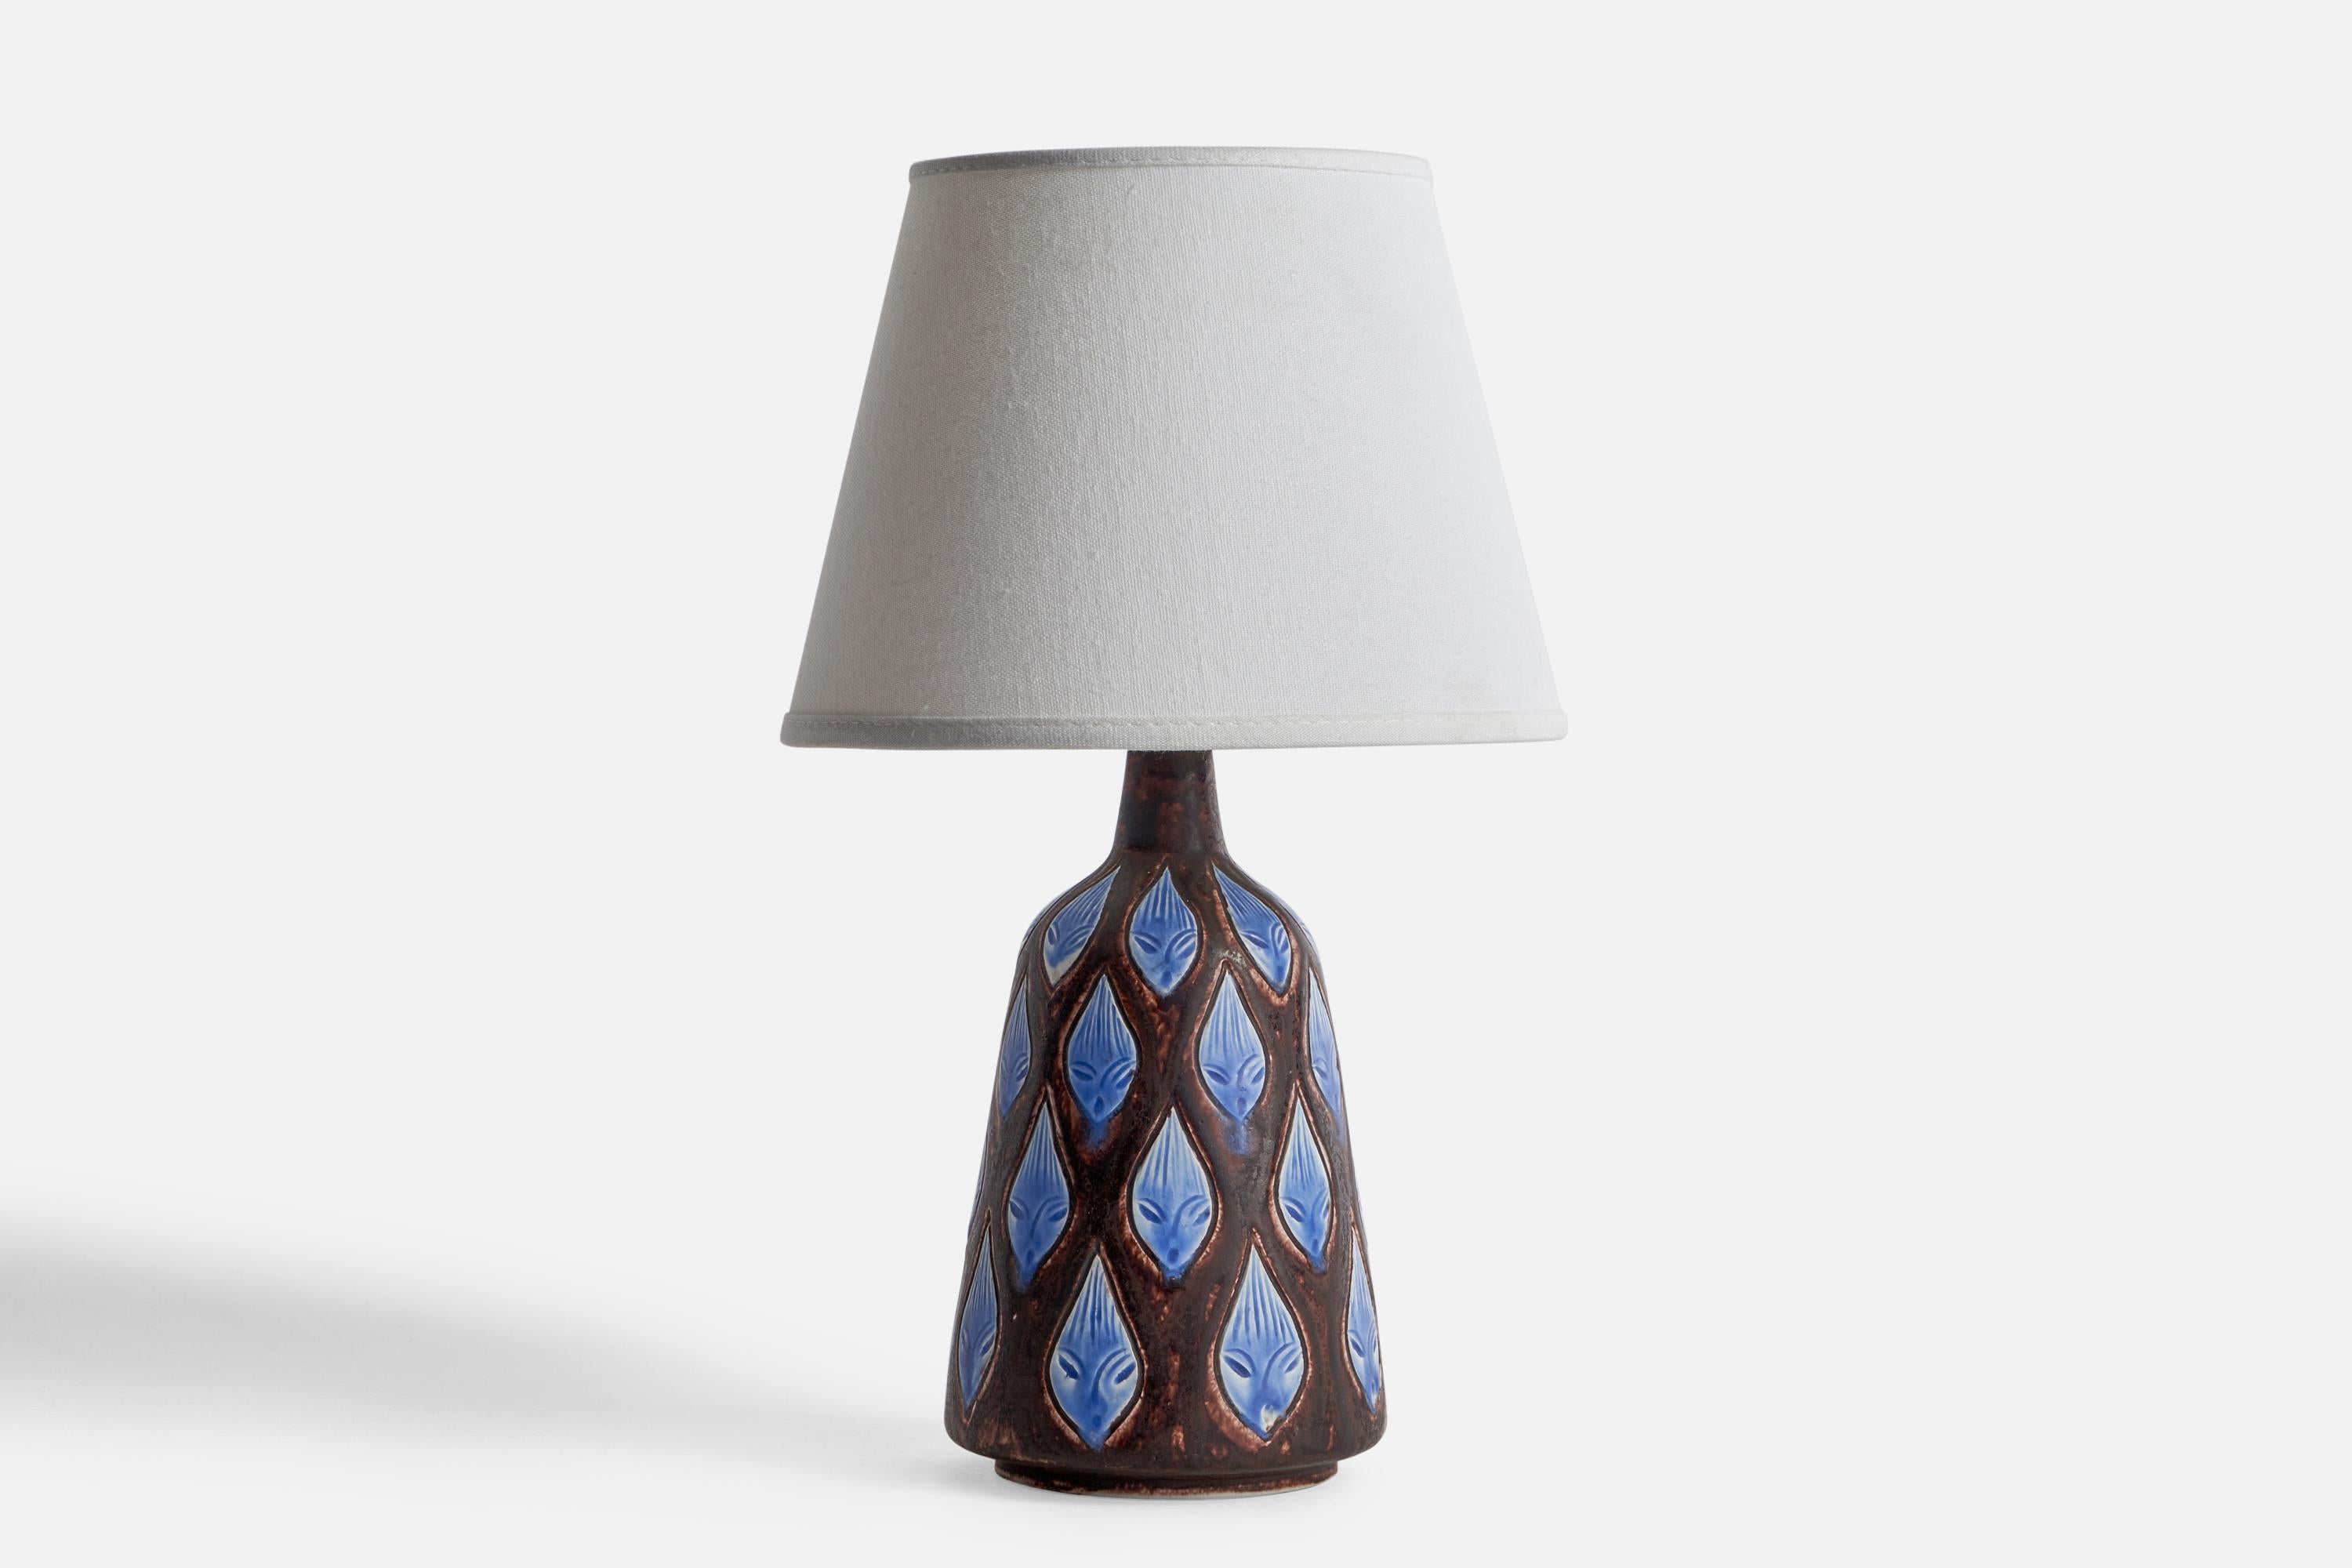 Lámpara de mesa esmaltada en marrón y azul e incisa, diseñada por Hertha Bengtson y producida por Rörstrand, Suecia, años sesenta.

Dimensiones de la lámpara (pulgadas): 10,5